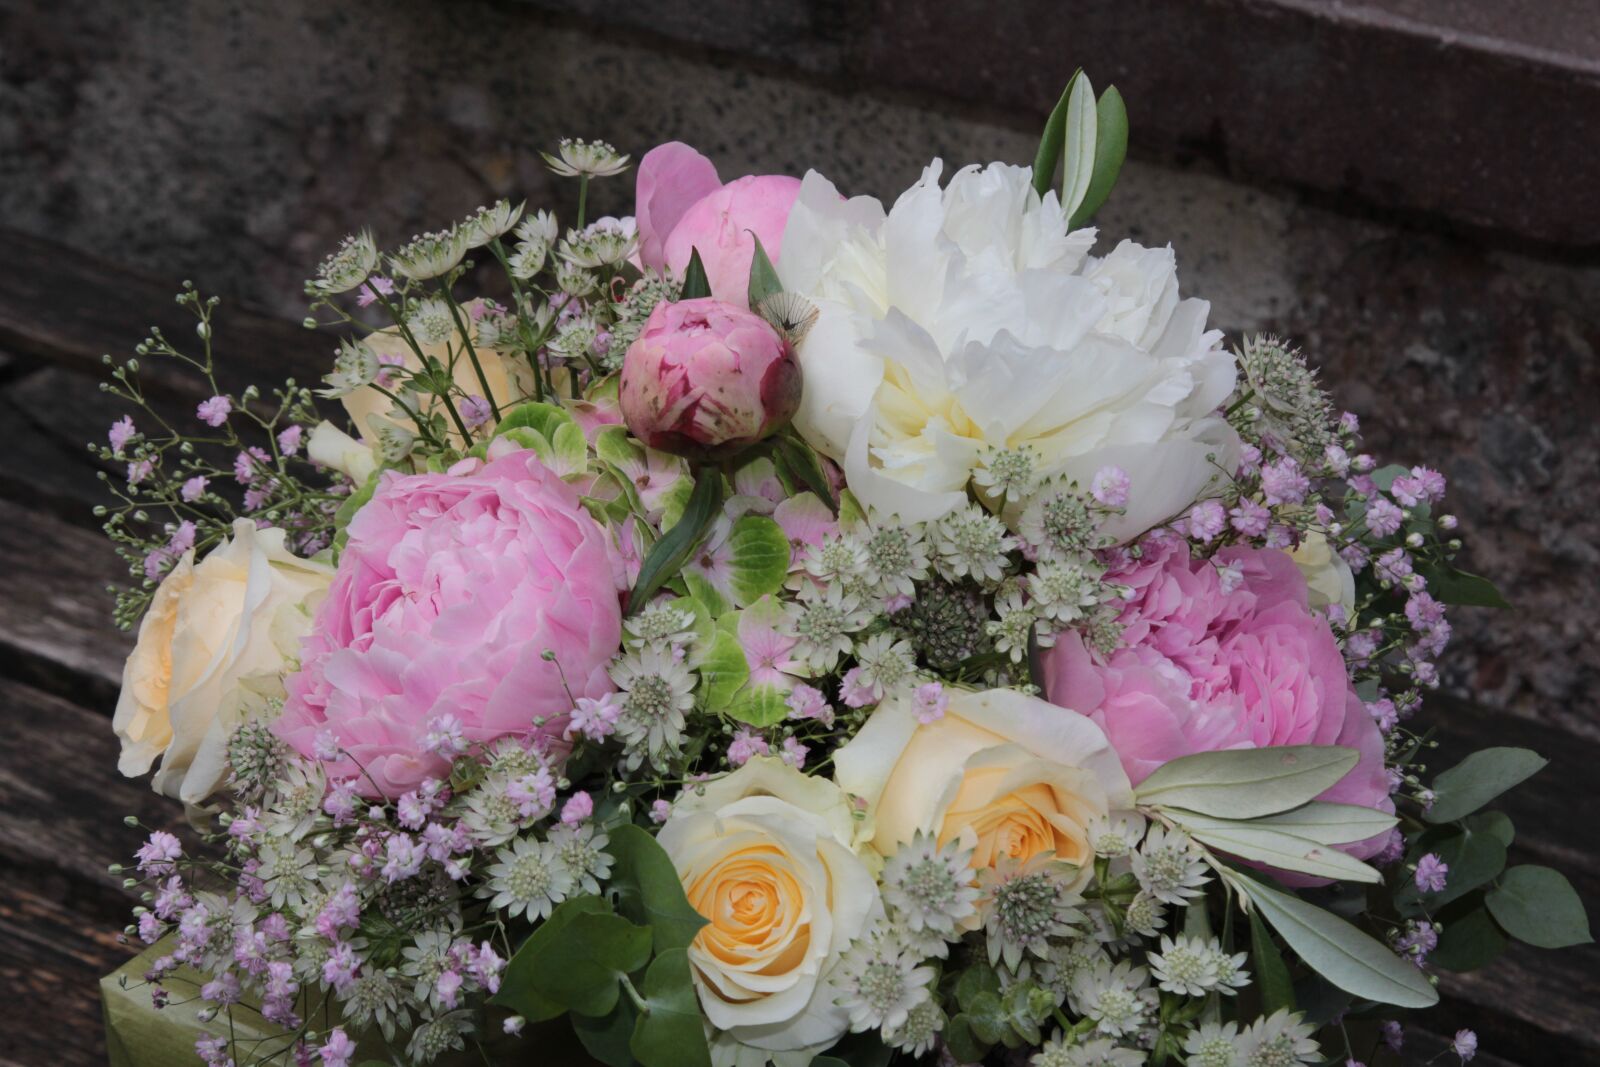 Canon EOS 60D + Canon EF 24-105mm F4L IS USM sample photo. Flower, bouquet, floral arrangement photography